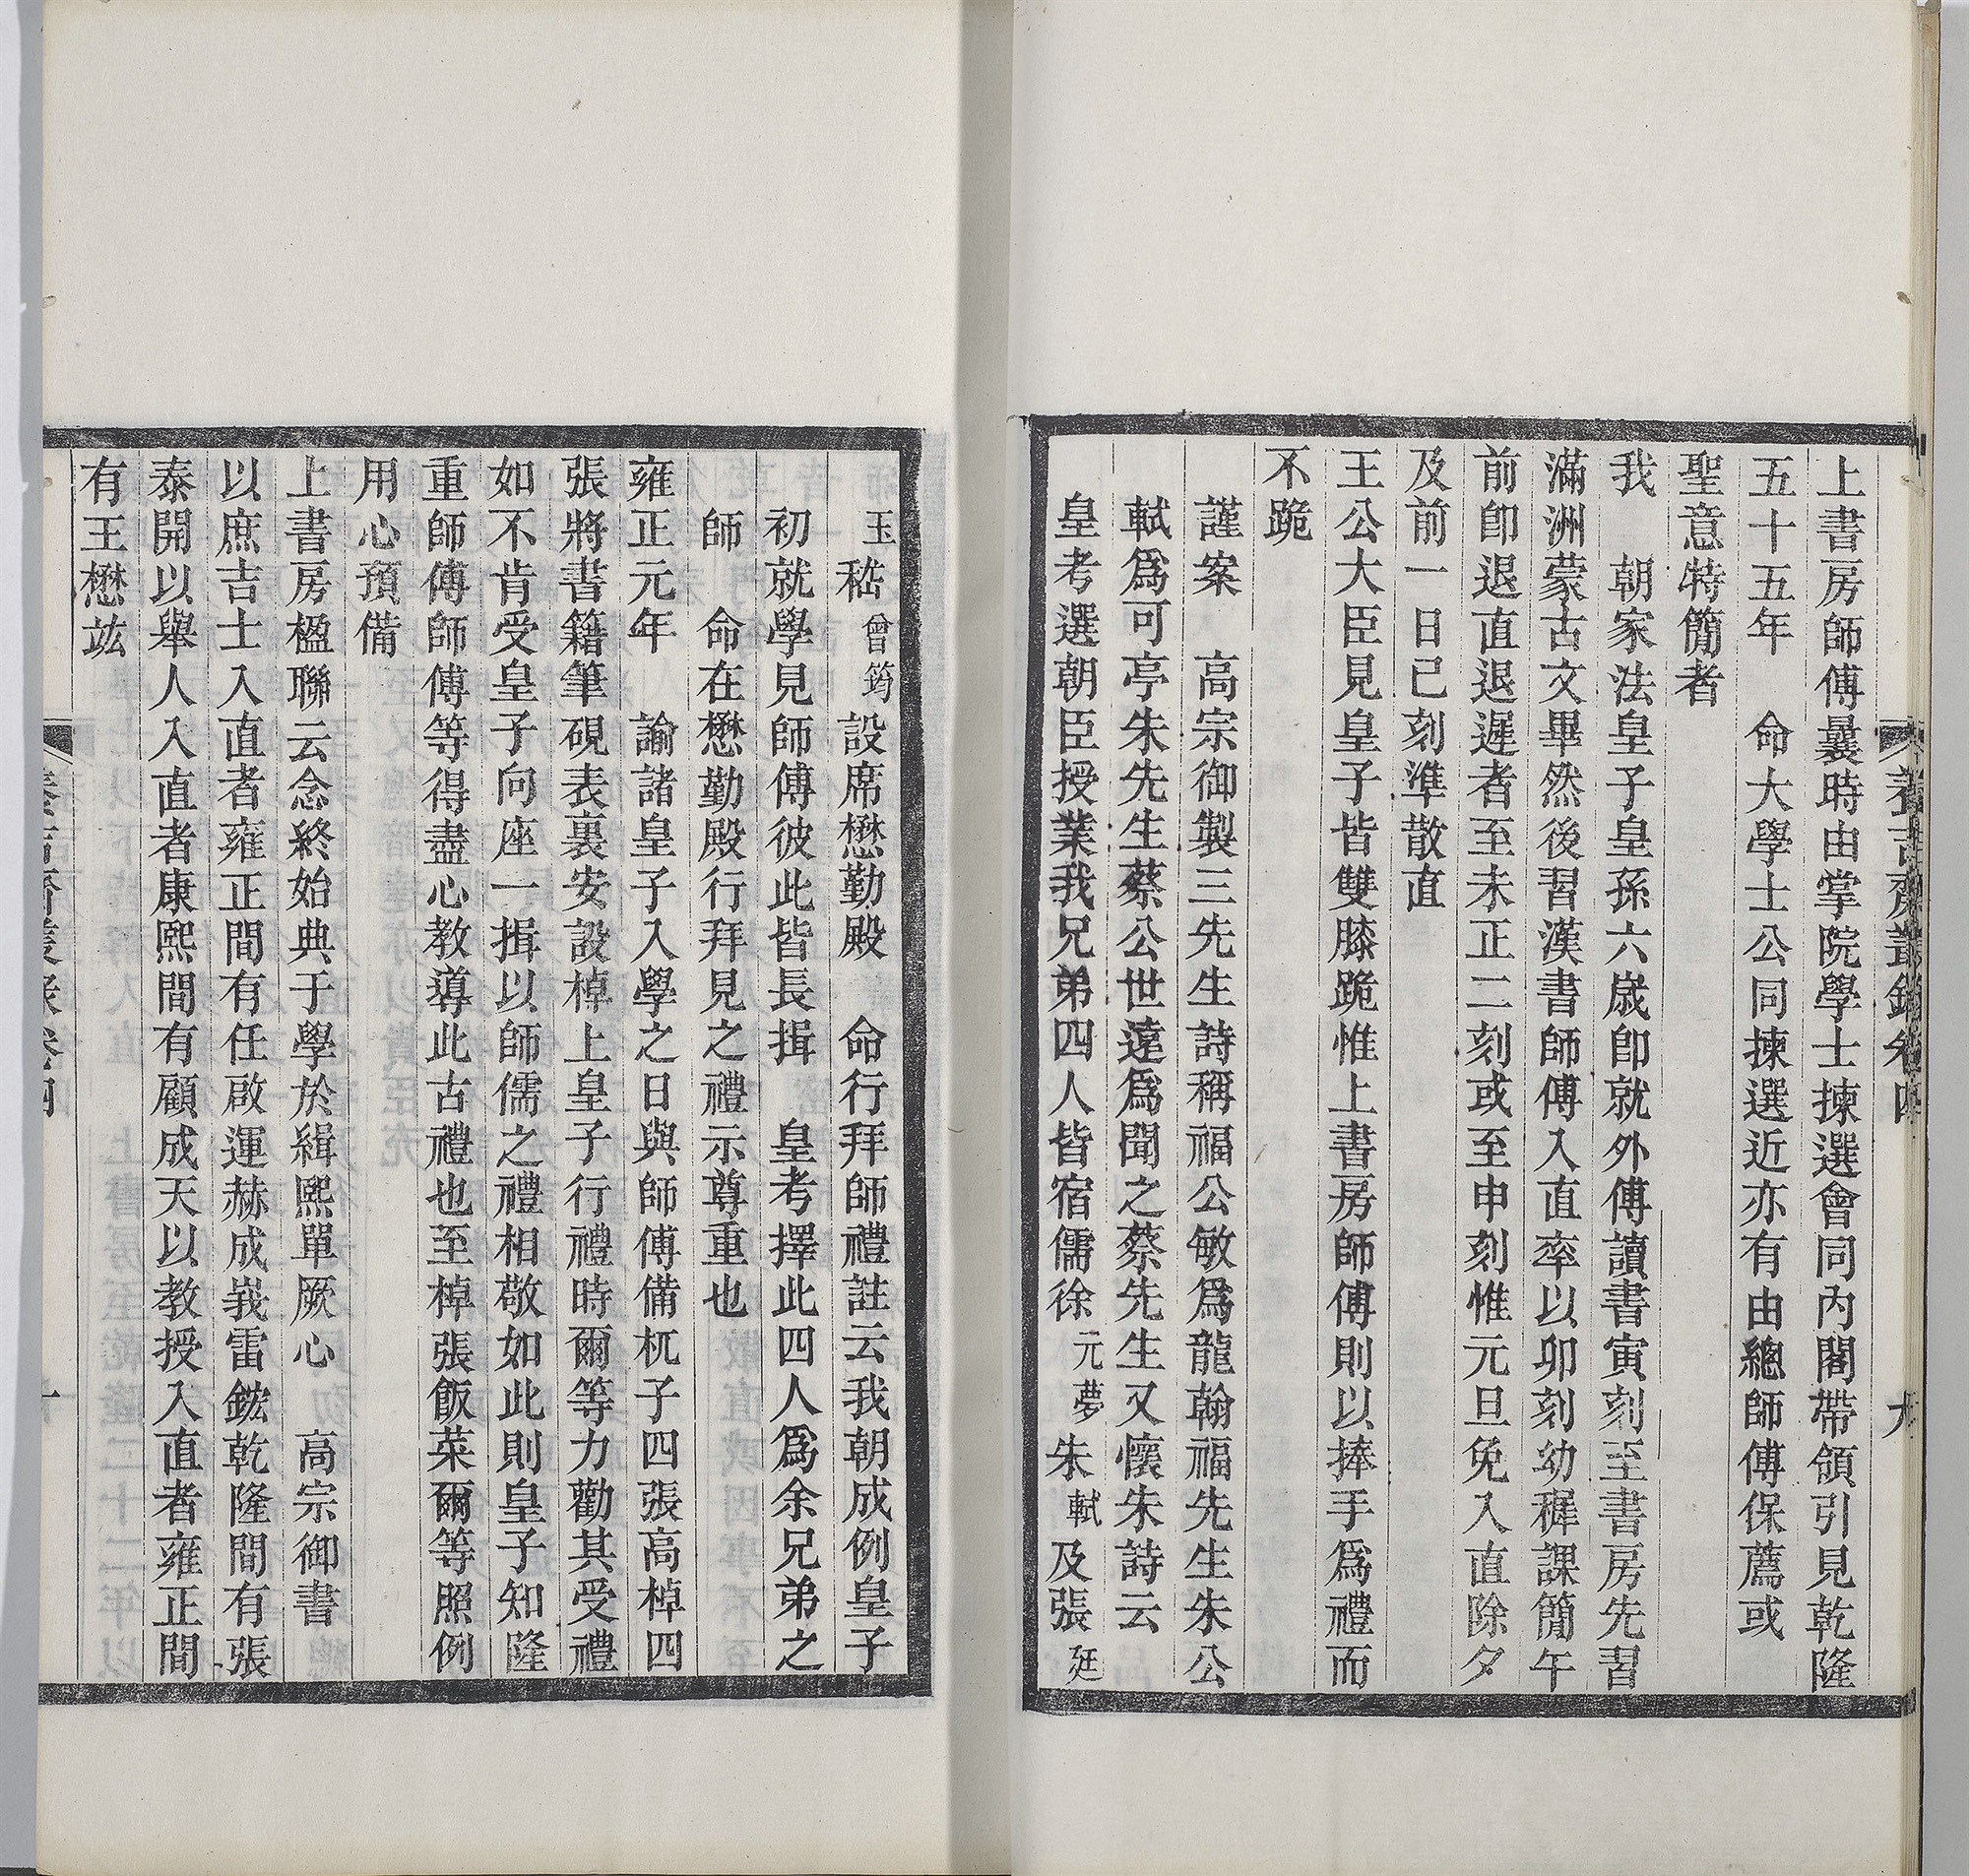 Yangjizhaiconglu (Book 4, Vol. 2), written by Wu Zhen-yu (1792-1870), Qing dynasty